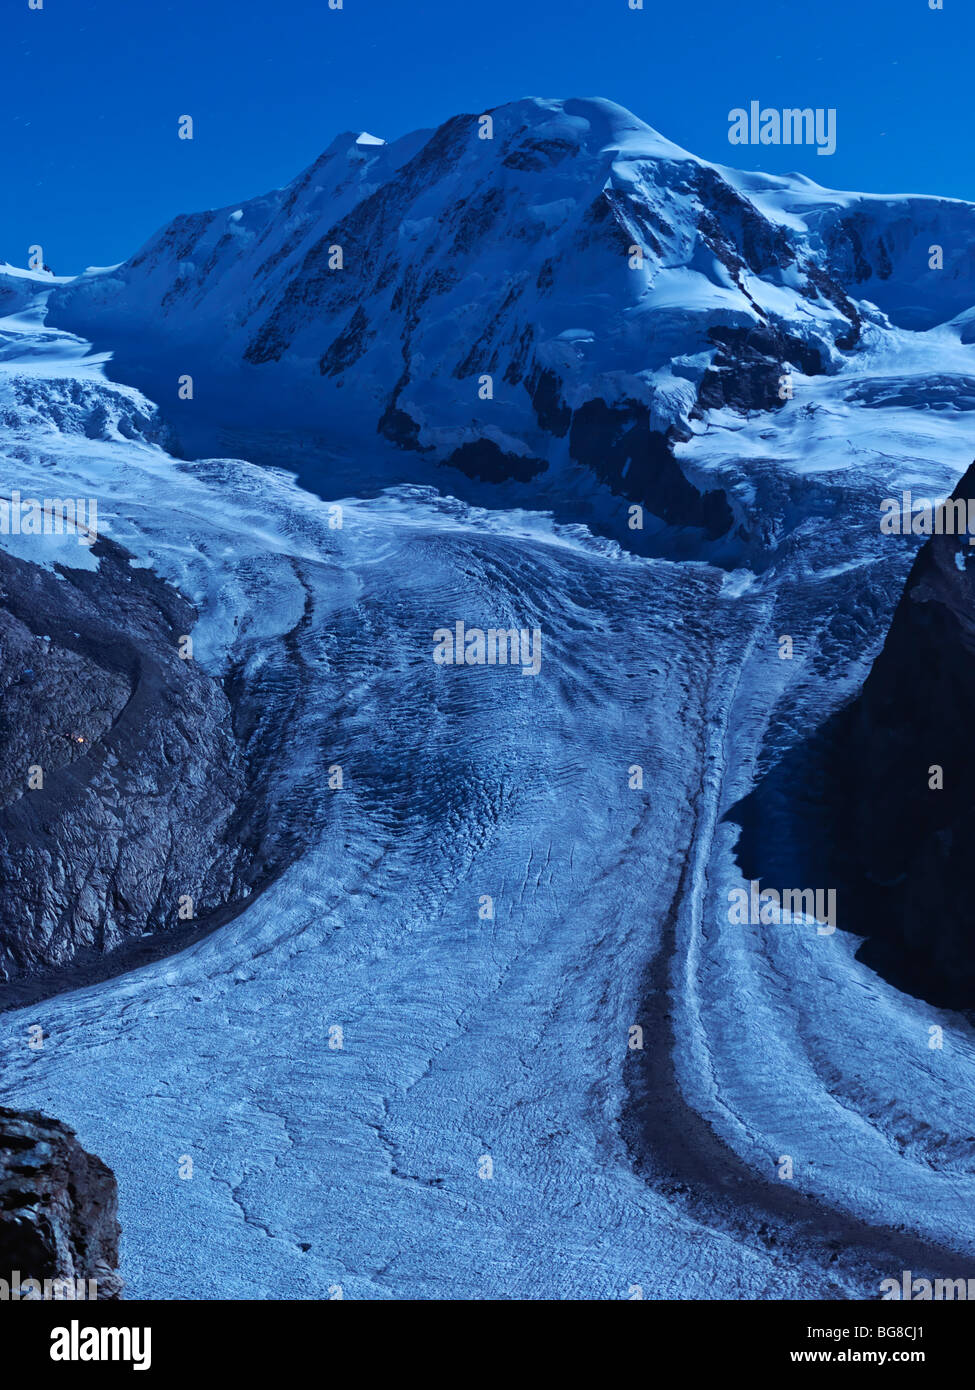 Suisse, Valais, Zermatt Gornergrat, le Breithorn et le Mont,glacier du Gorner éclairé par lumière de lune Banque D'Images